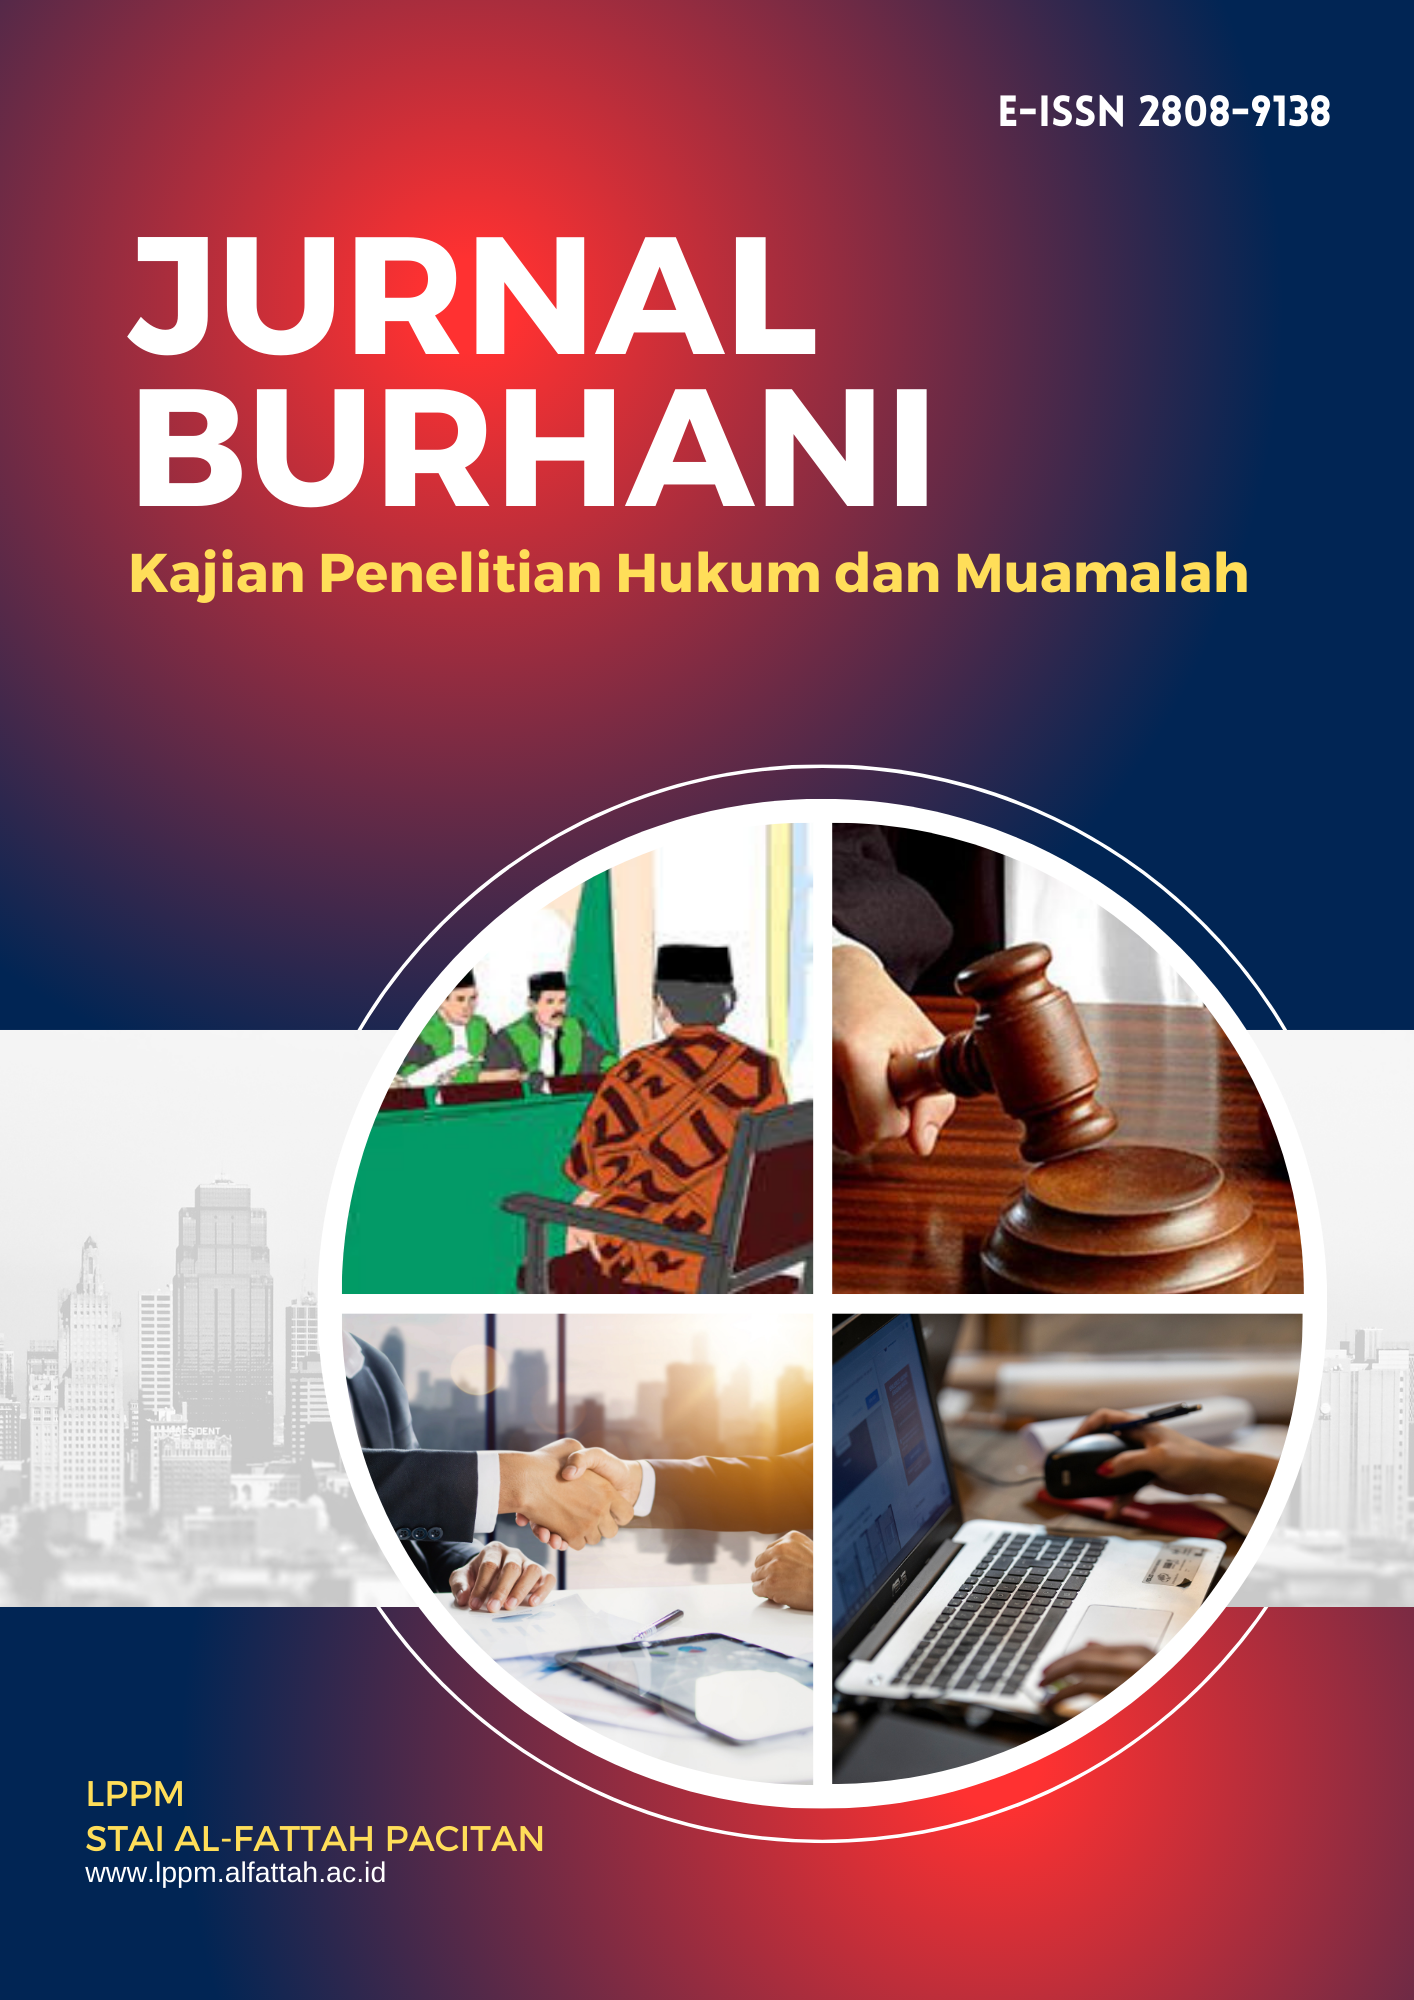 JURNAL BURHANI: Kajian Penelitian Hukum dan Muamalah